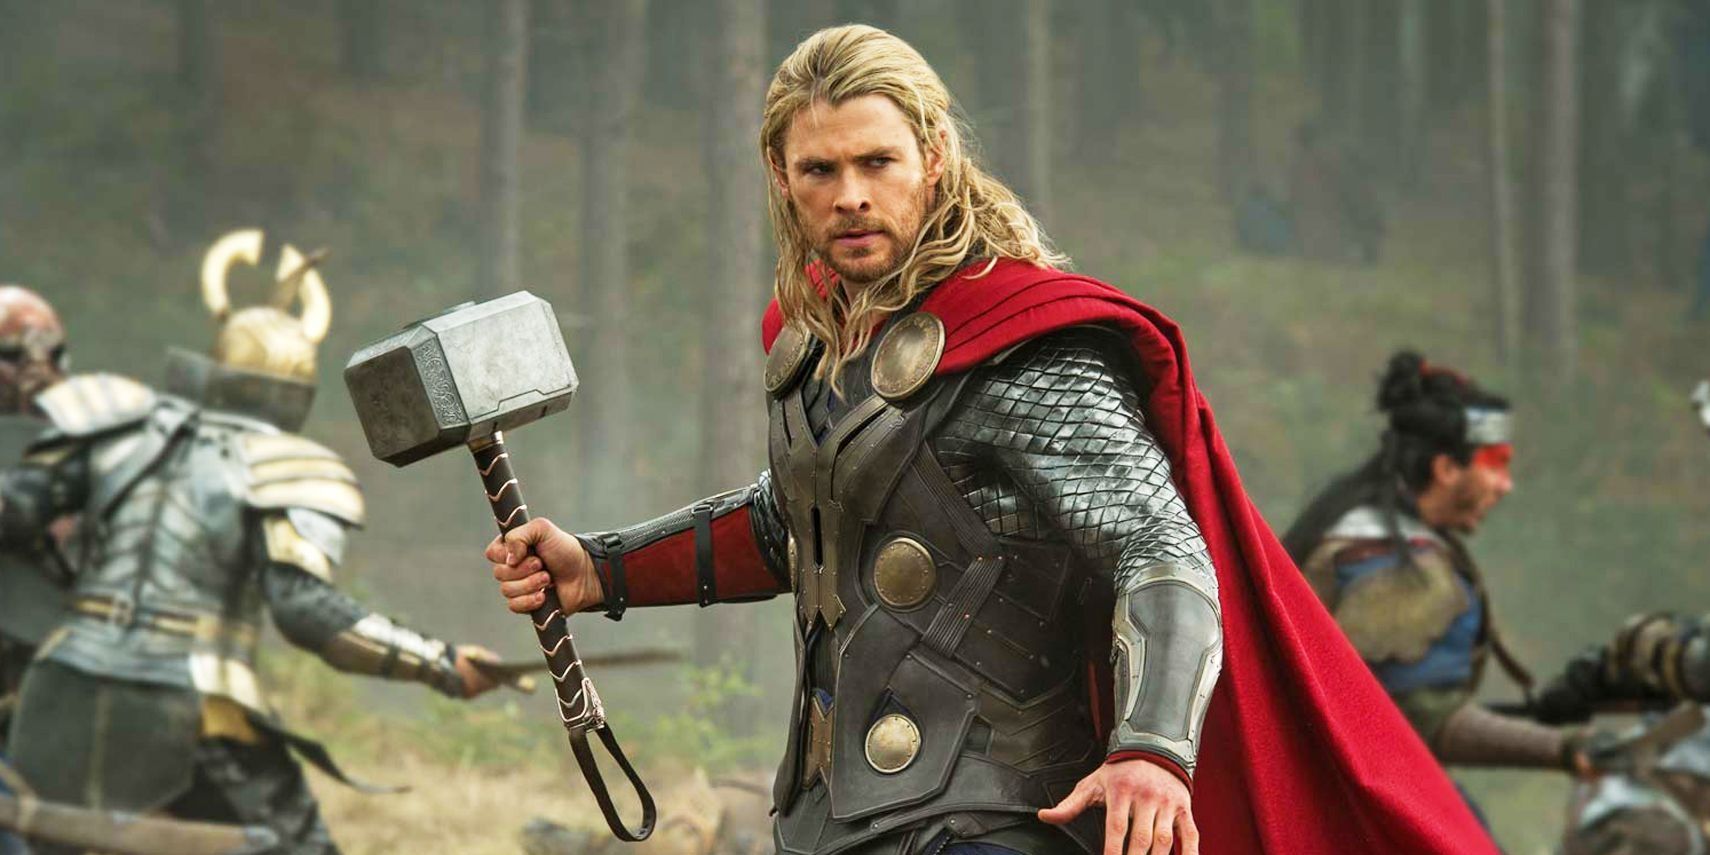 Thor holding Mjolnir in battle